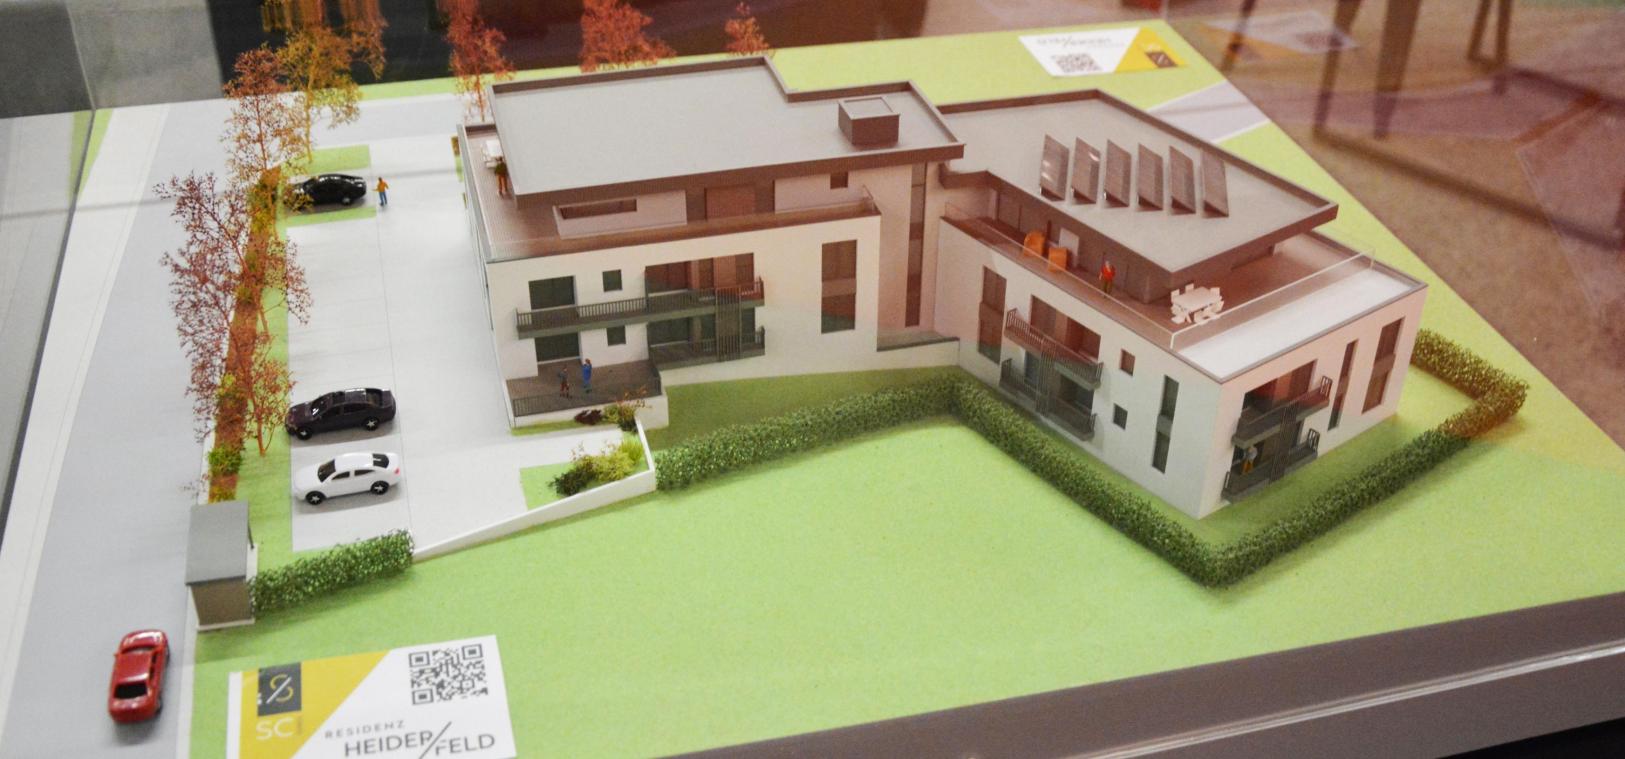 <p>Ein Blickfang war, in exponierter Lage, das Modell der künftigen Residenz Heiderfeld an der Straße Amel-Deidenberg, die durch ihre ansprechende Architektur in optimaler Nutzung des verfügbaren Raums besticht.</p>